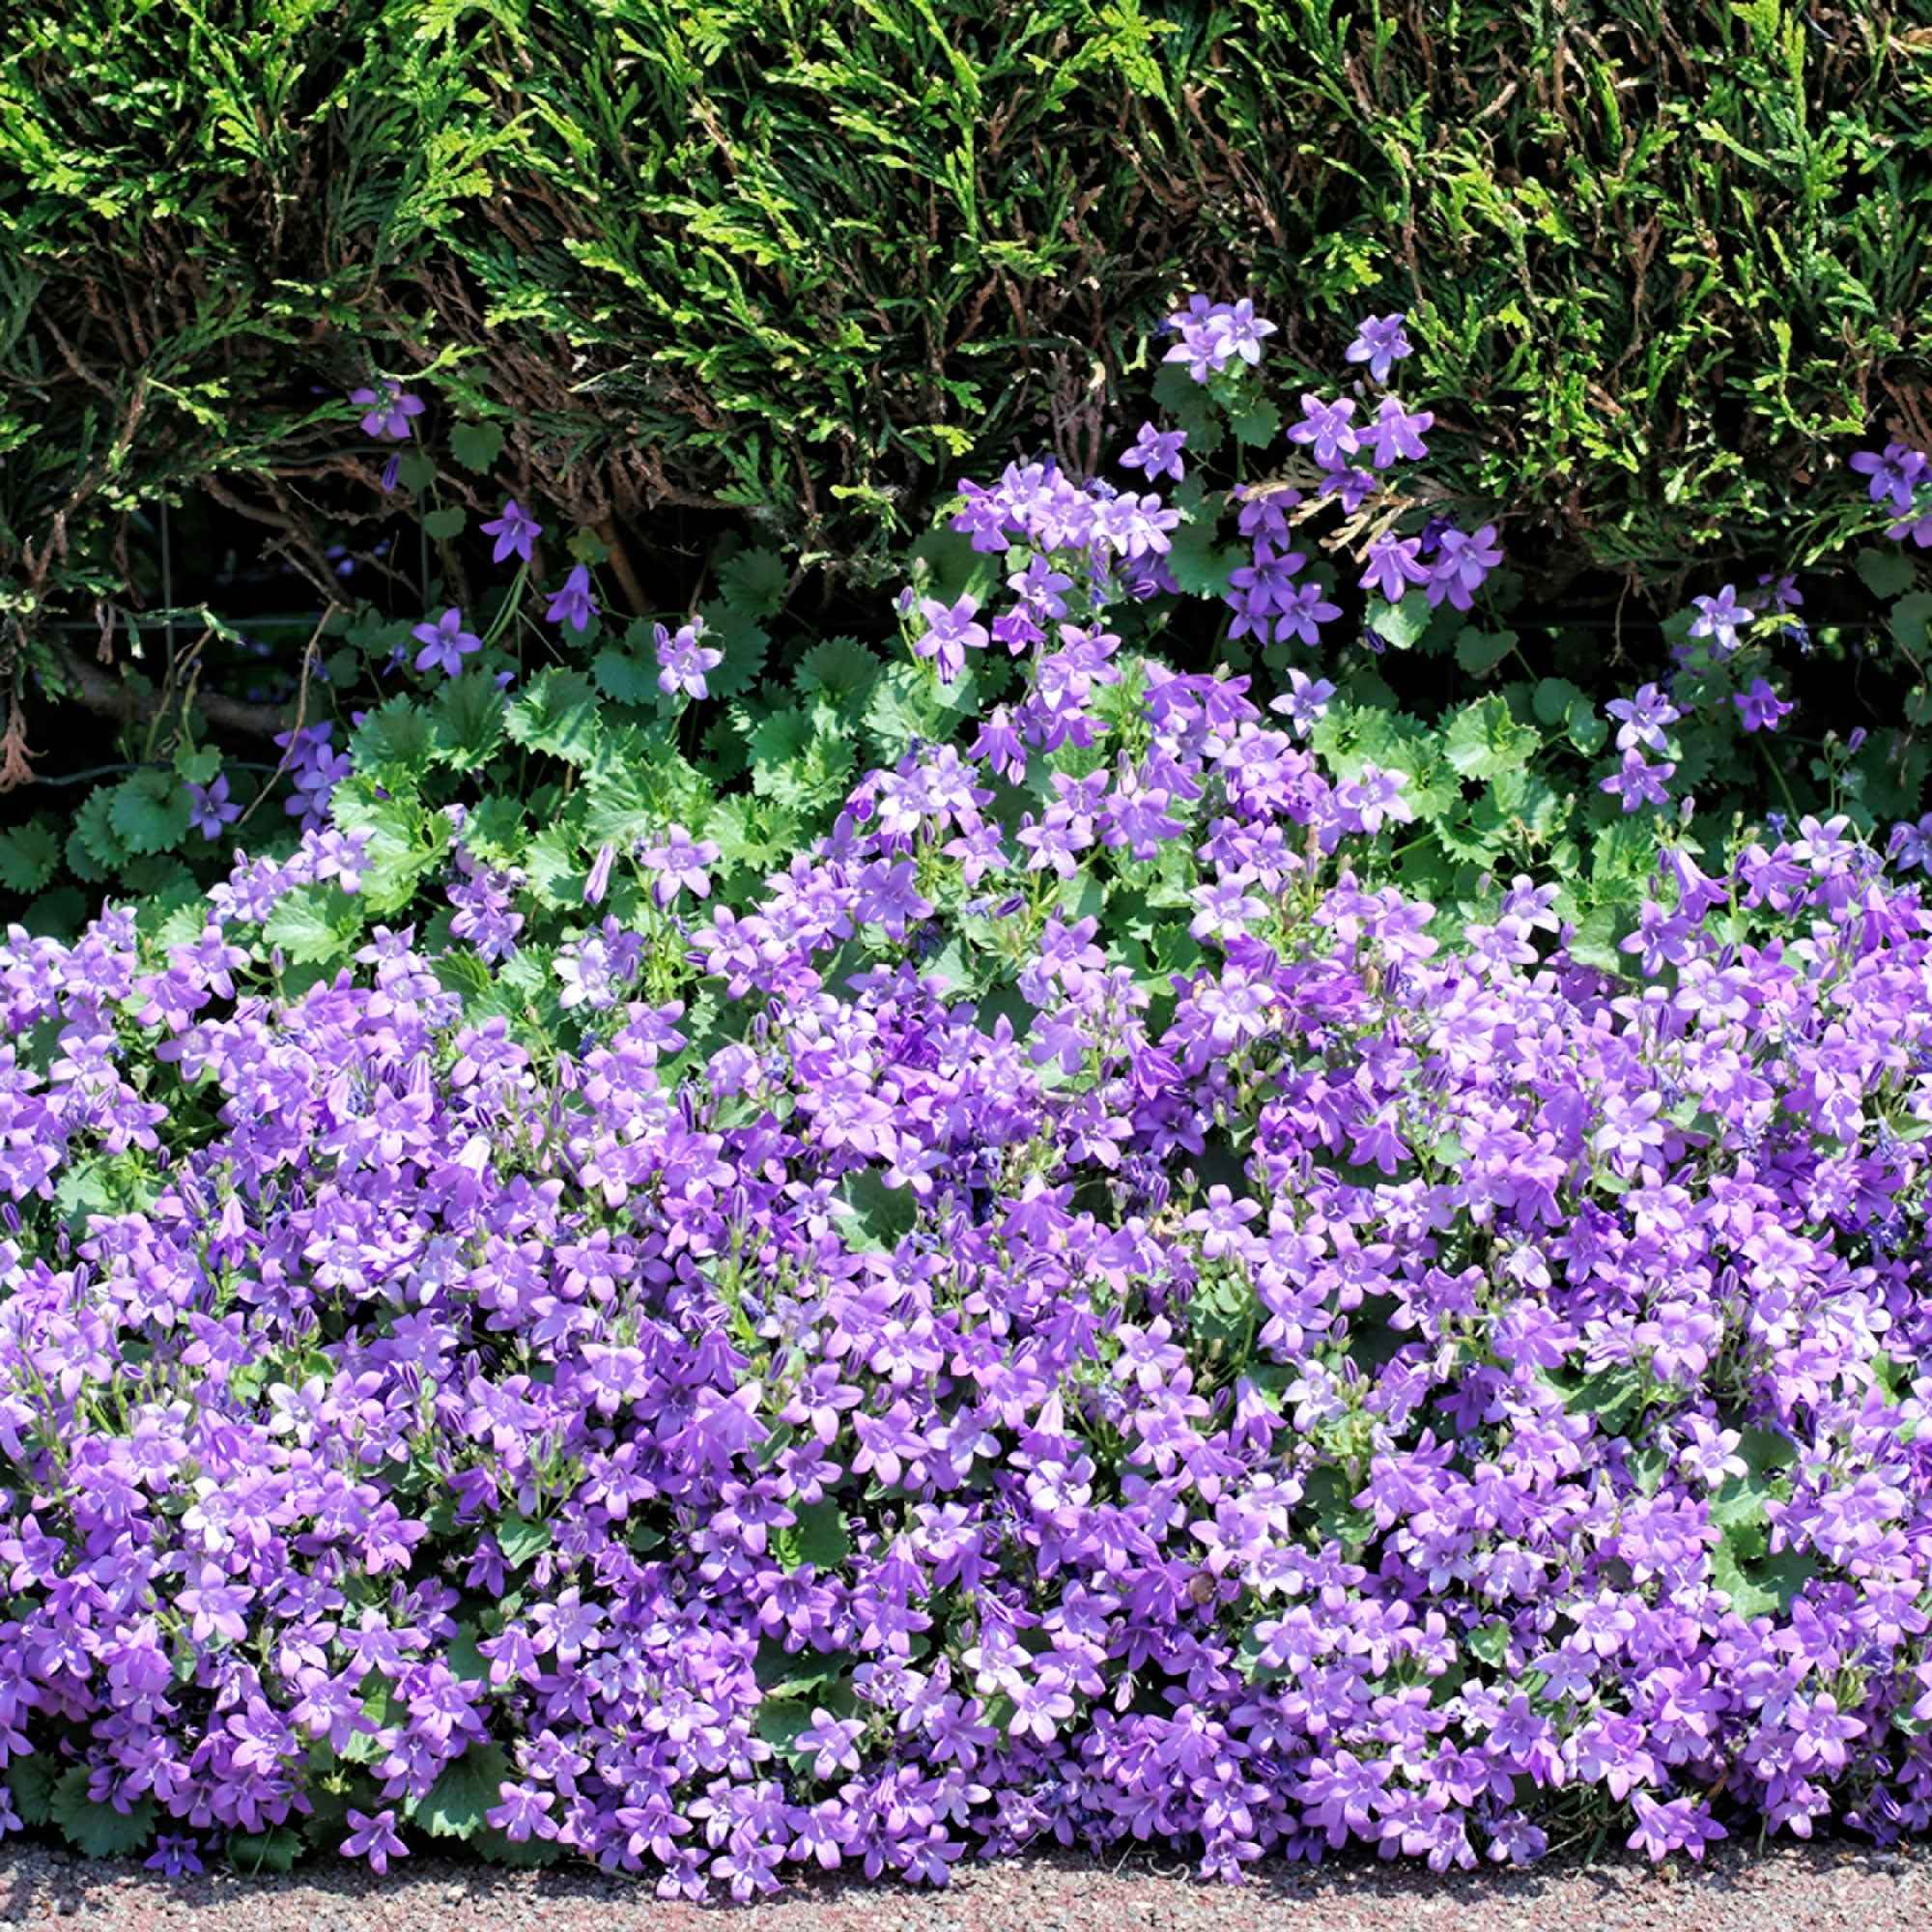 Créez un massif de fleurs et d'herbes aromatiques – Bakker.com